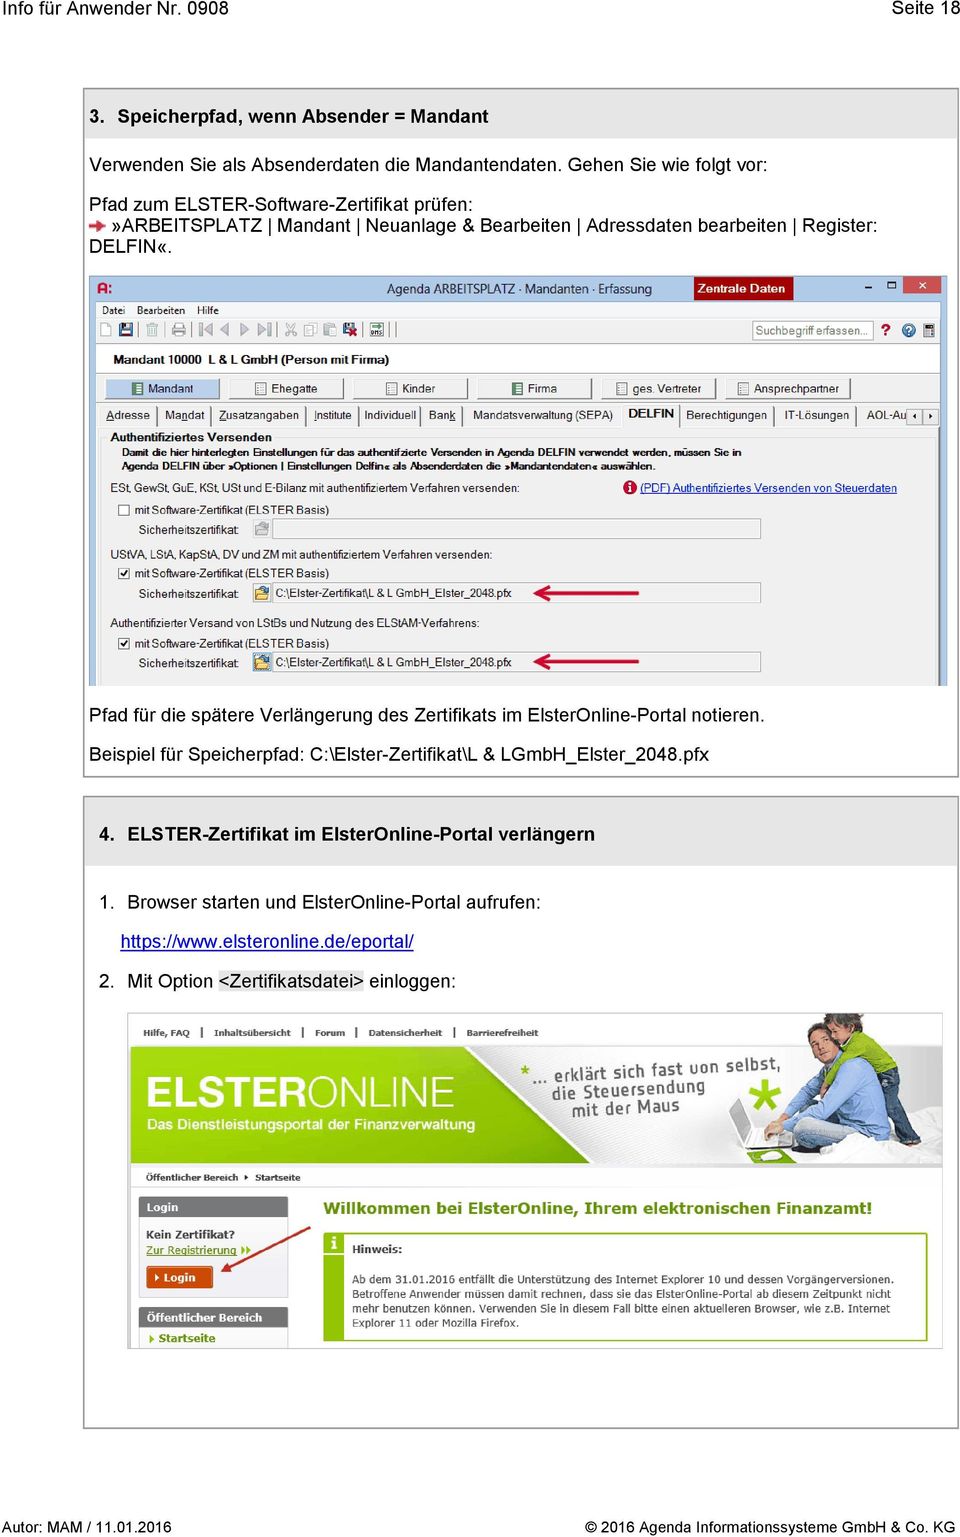 DELFIN«. Pfad für die spätere Verlängerung des Zertifikats im ElsterOnline-Portal notieren.